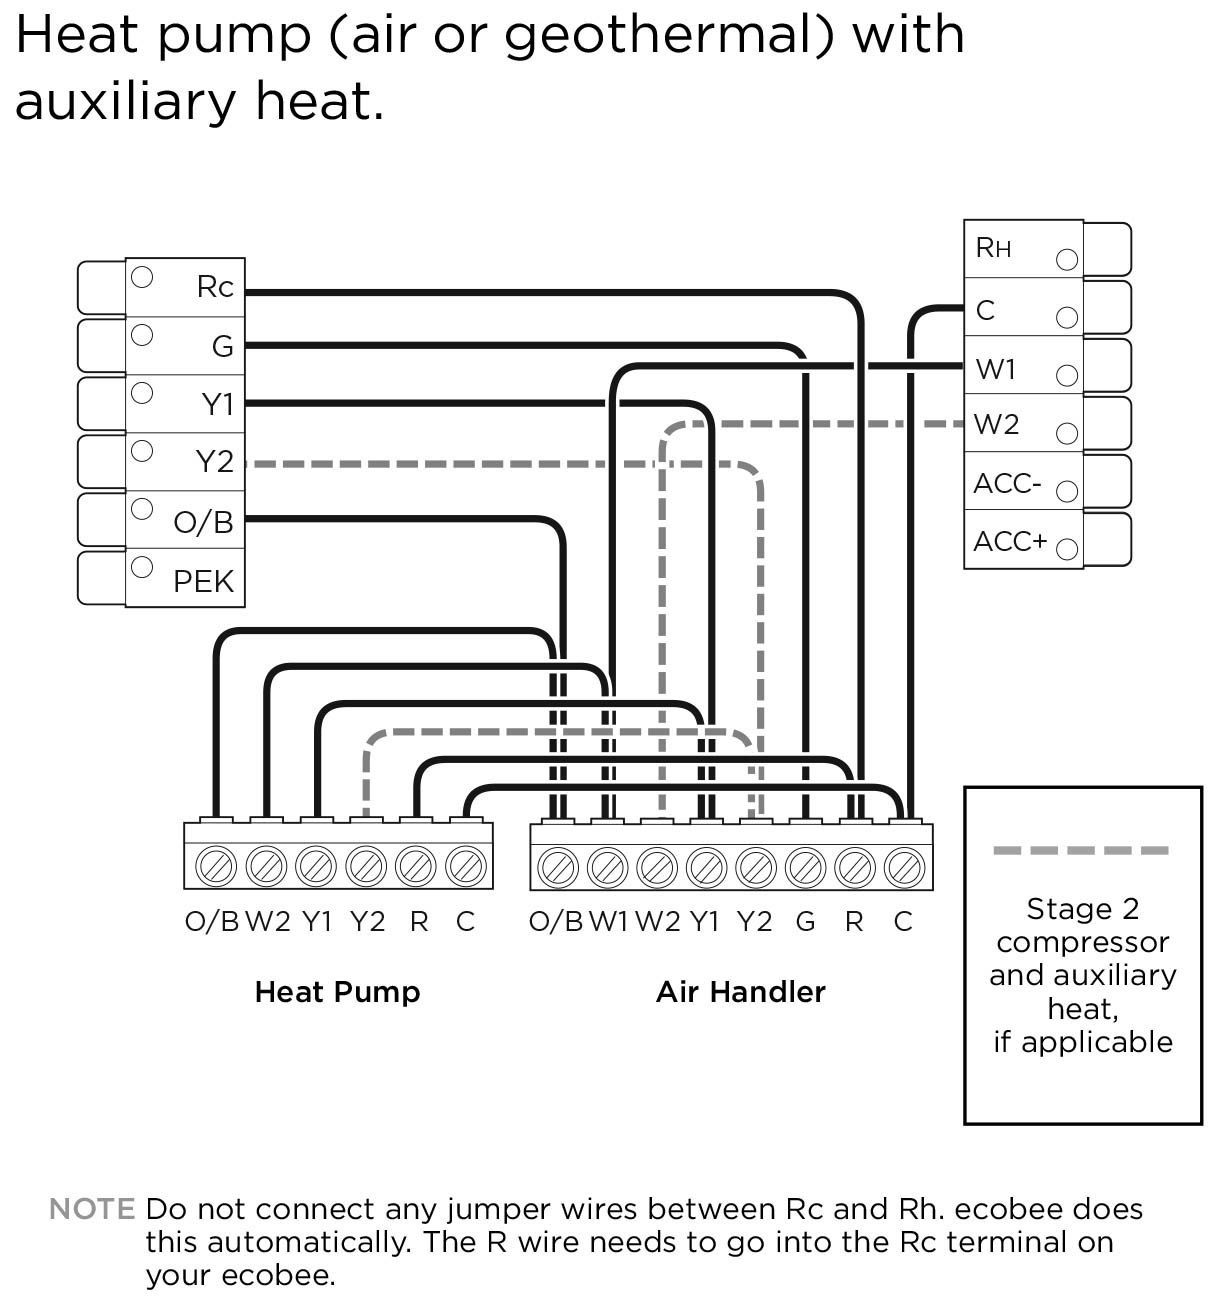 Geothermal Heat Pump Wiring Diagram | Manual E-Books - Heat Pump Wiring Diagram